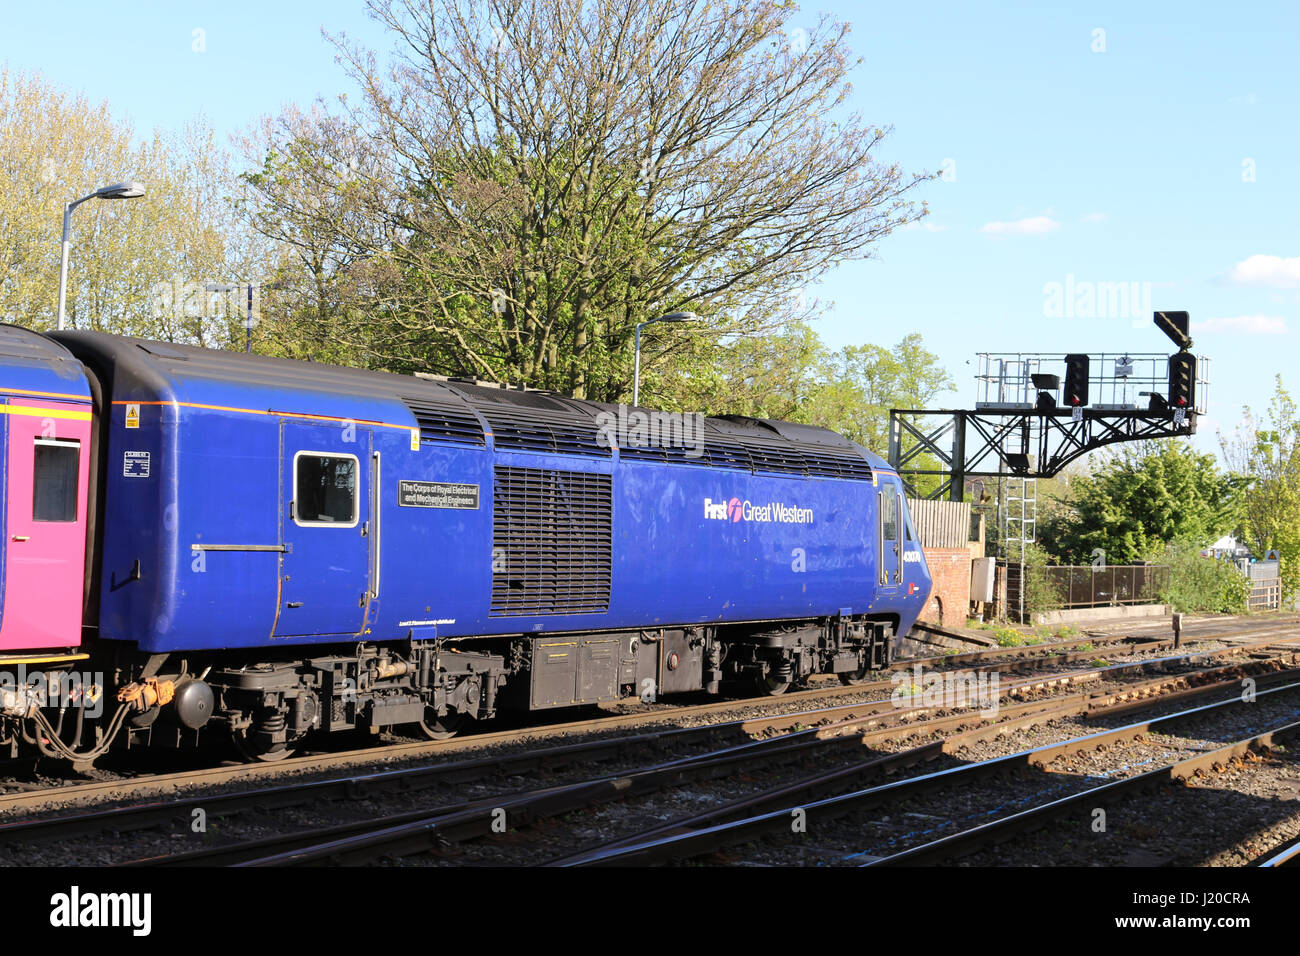 Macht Auto 43070 auf Vorderseite des InterCity 125 Diesel-Zug in First Great Western Lackierung an Oxford Station am 22. April 2017. Stockfoto